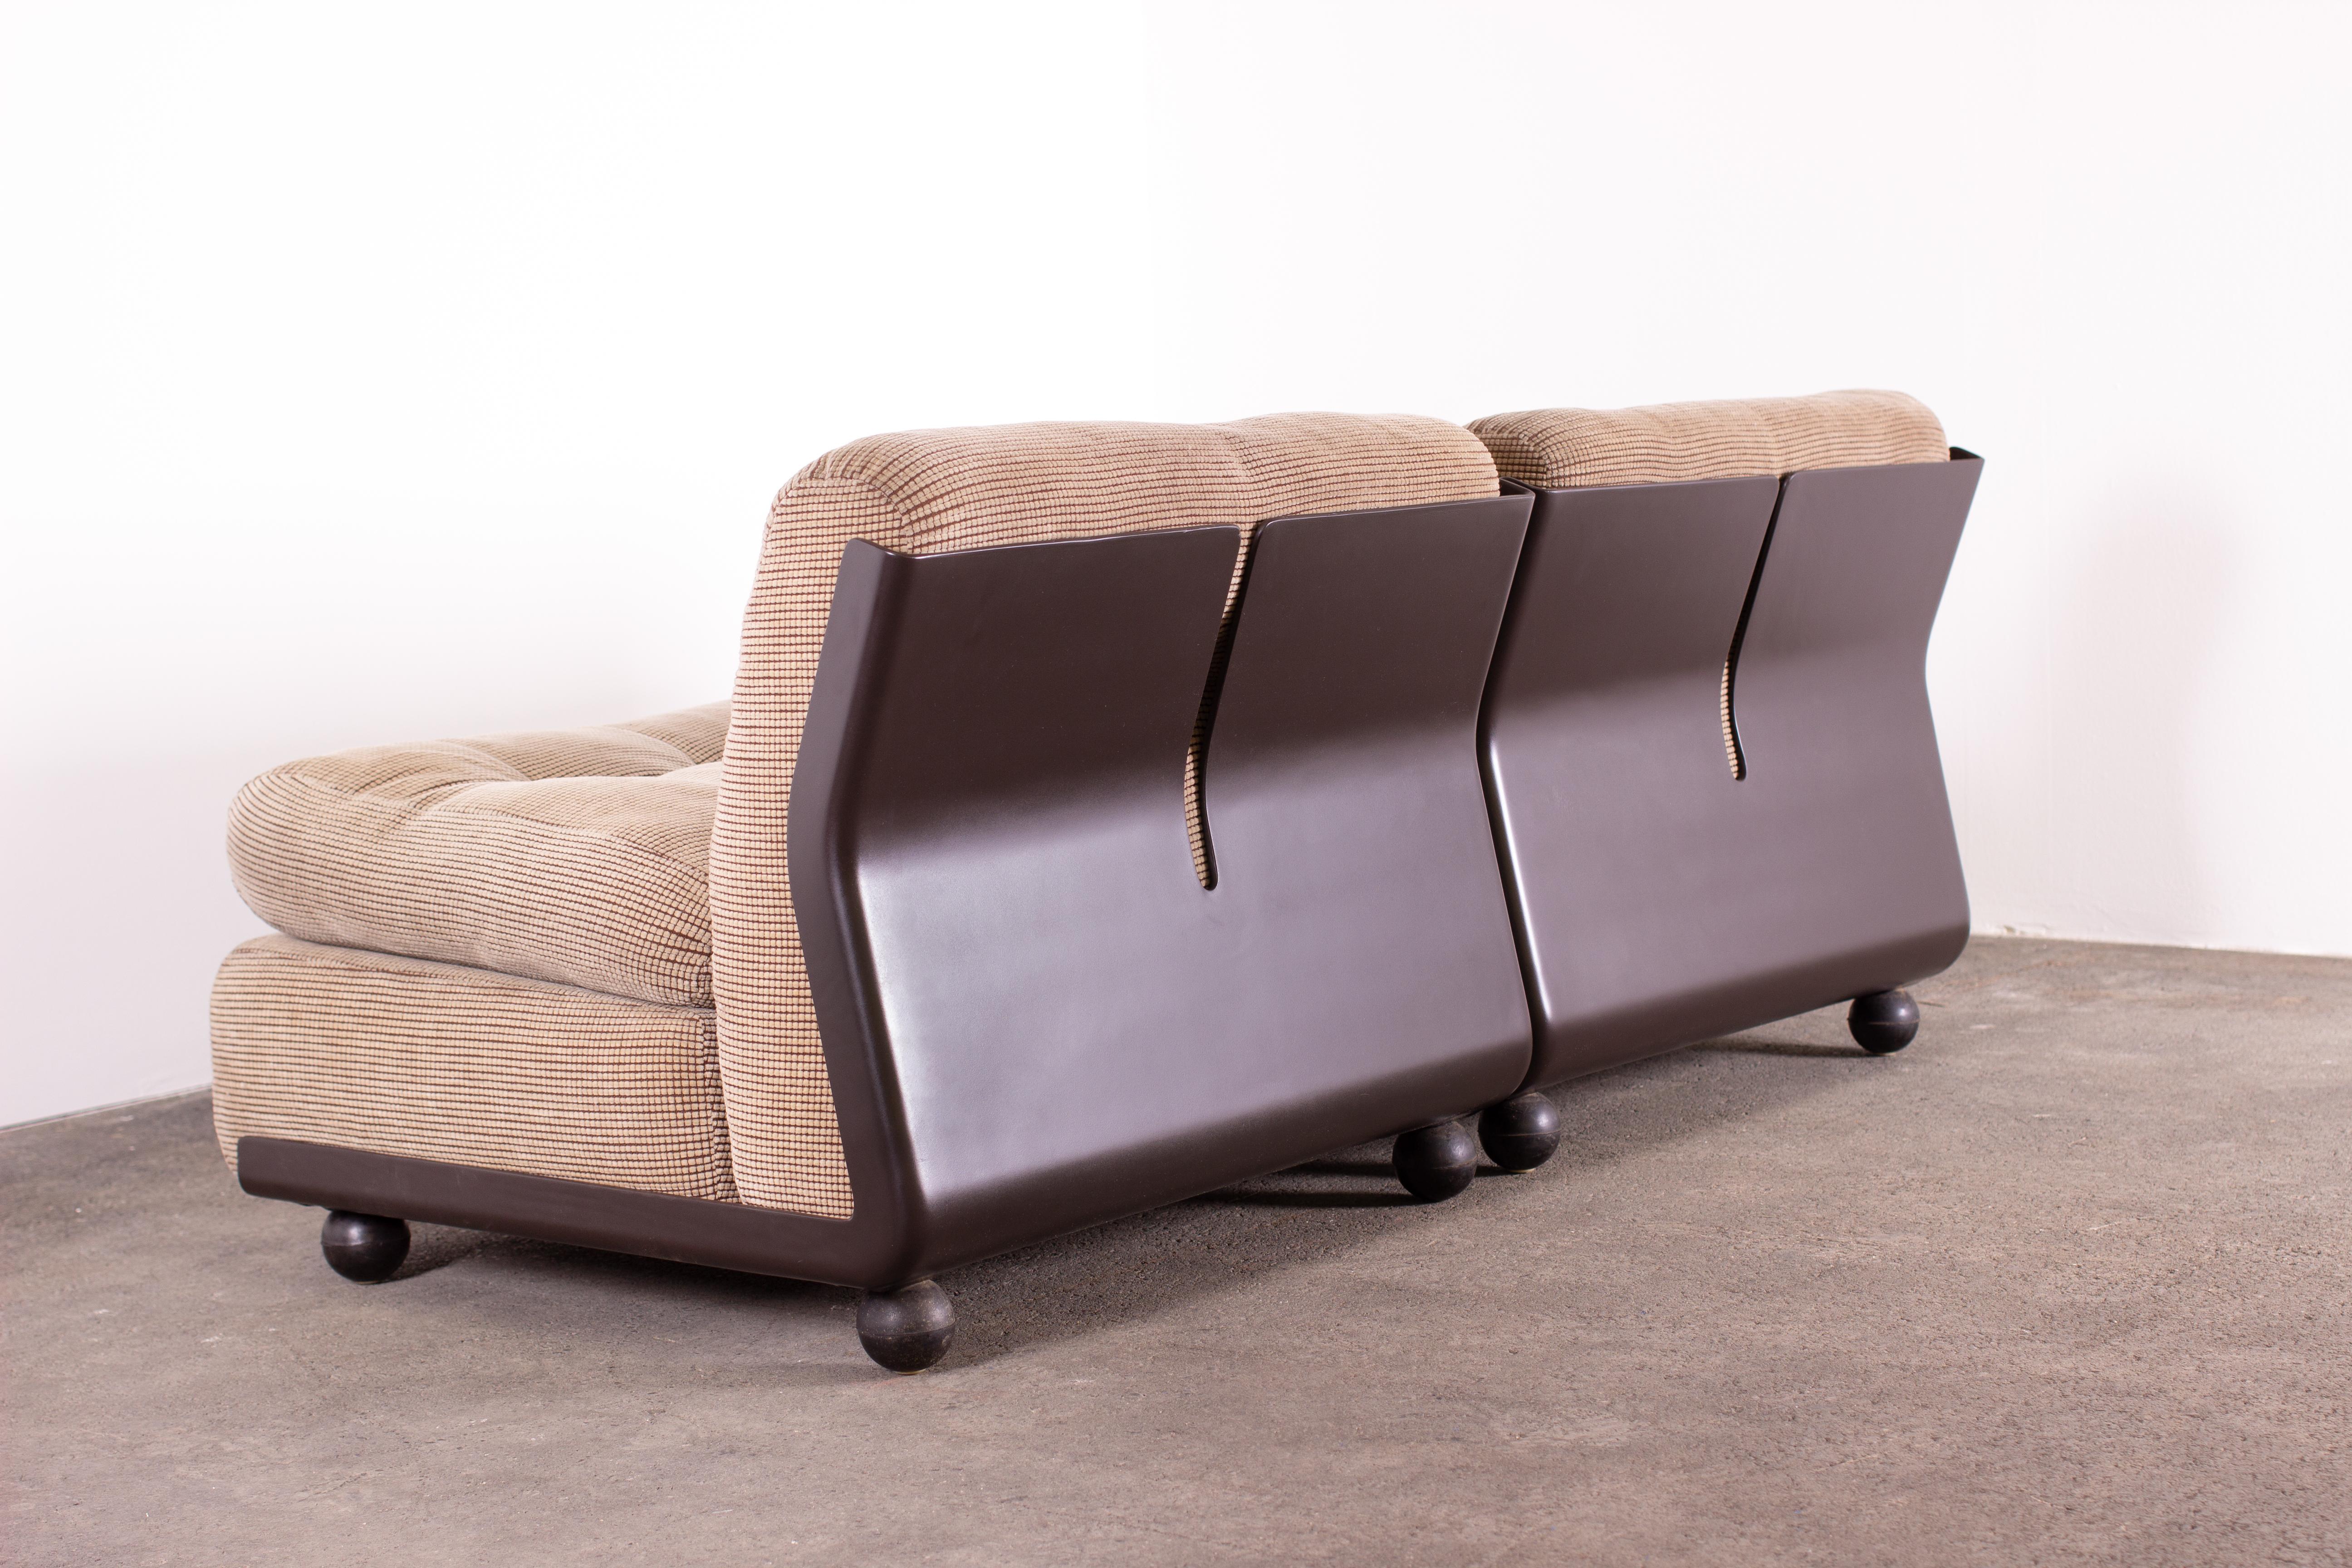 Set aus 2 ikonischen, modernen Amanta-Lounges von Mario Bellini für B&B Italia. Die braune, zickzackförmige Glasfaserschale beherbergt Sitzflächen, die mit einem sehr speziellen und attraktiven beigen Originalstoff gepolstert sind.

Mario Bellini